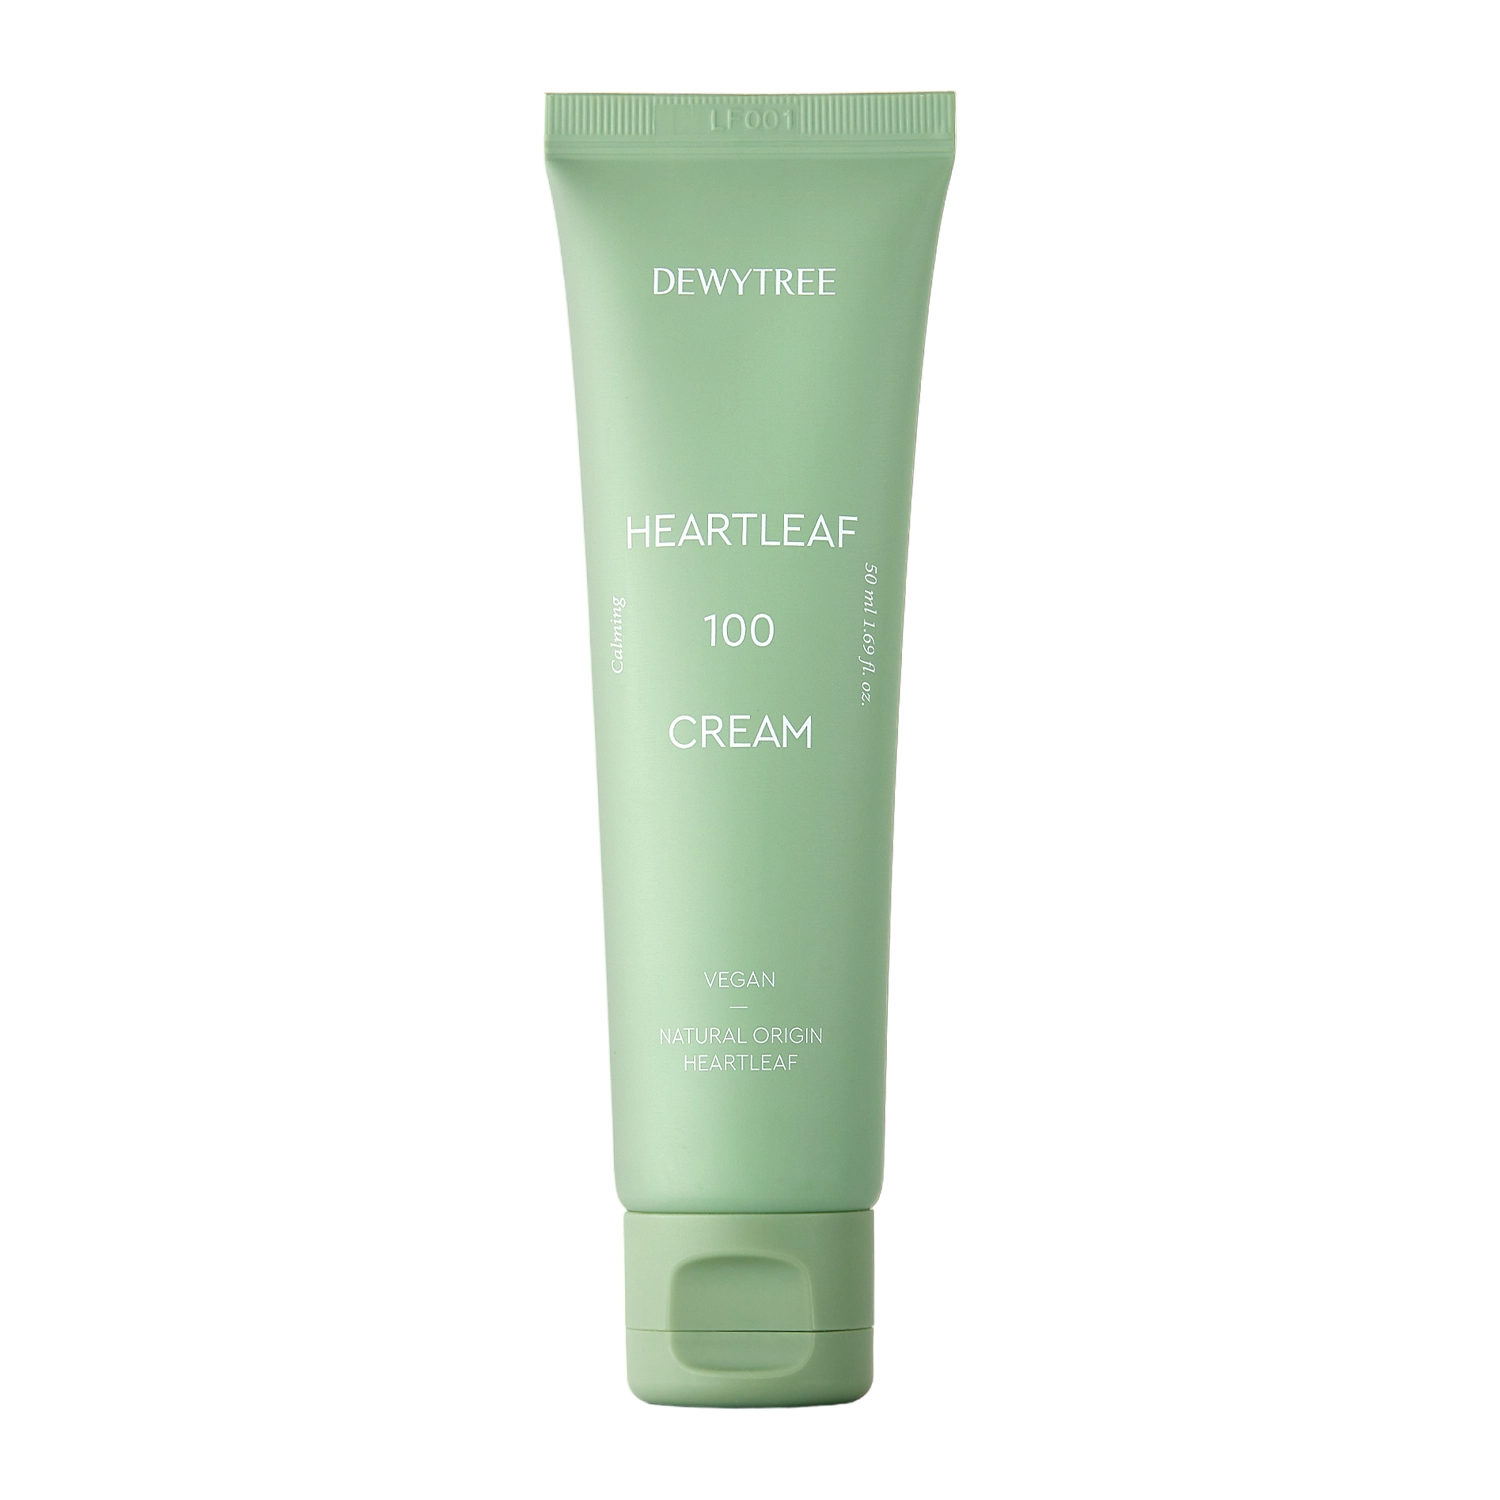 Dewytree - Heartleaf 100 Cream - Успокаивающий крем для лица с экстрактом гуттуинии - 50ml